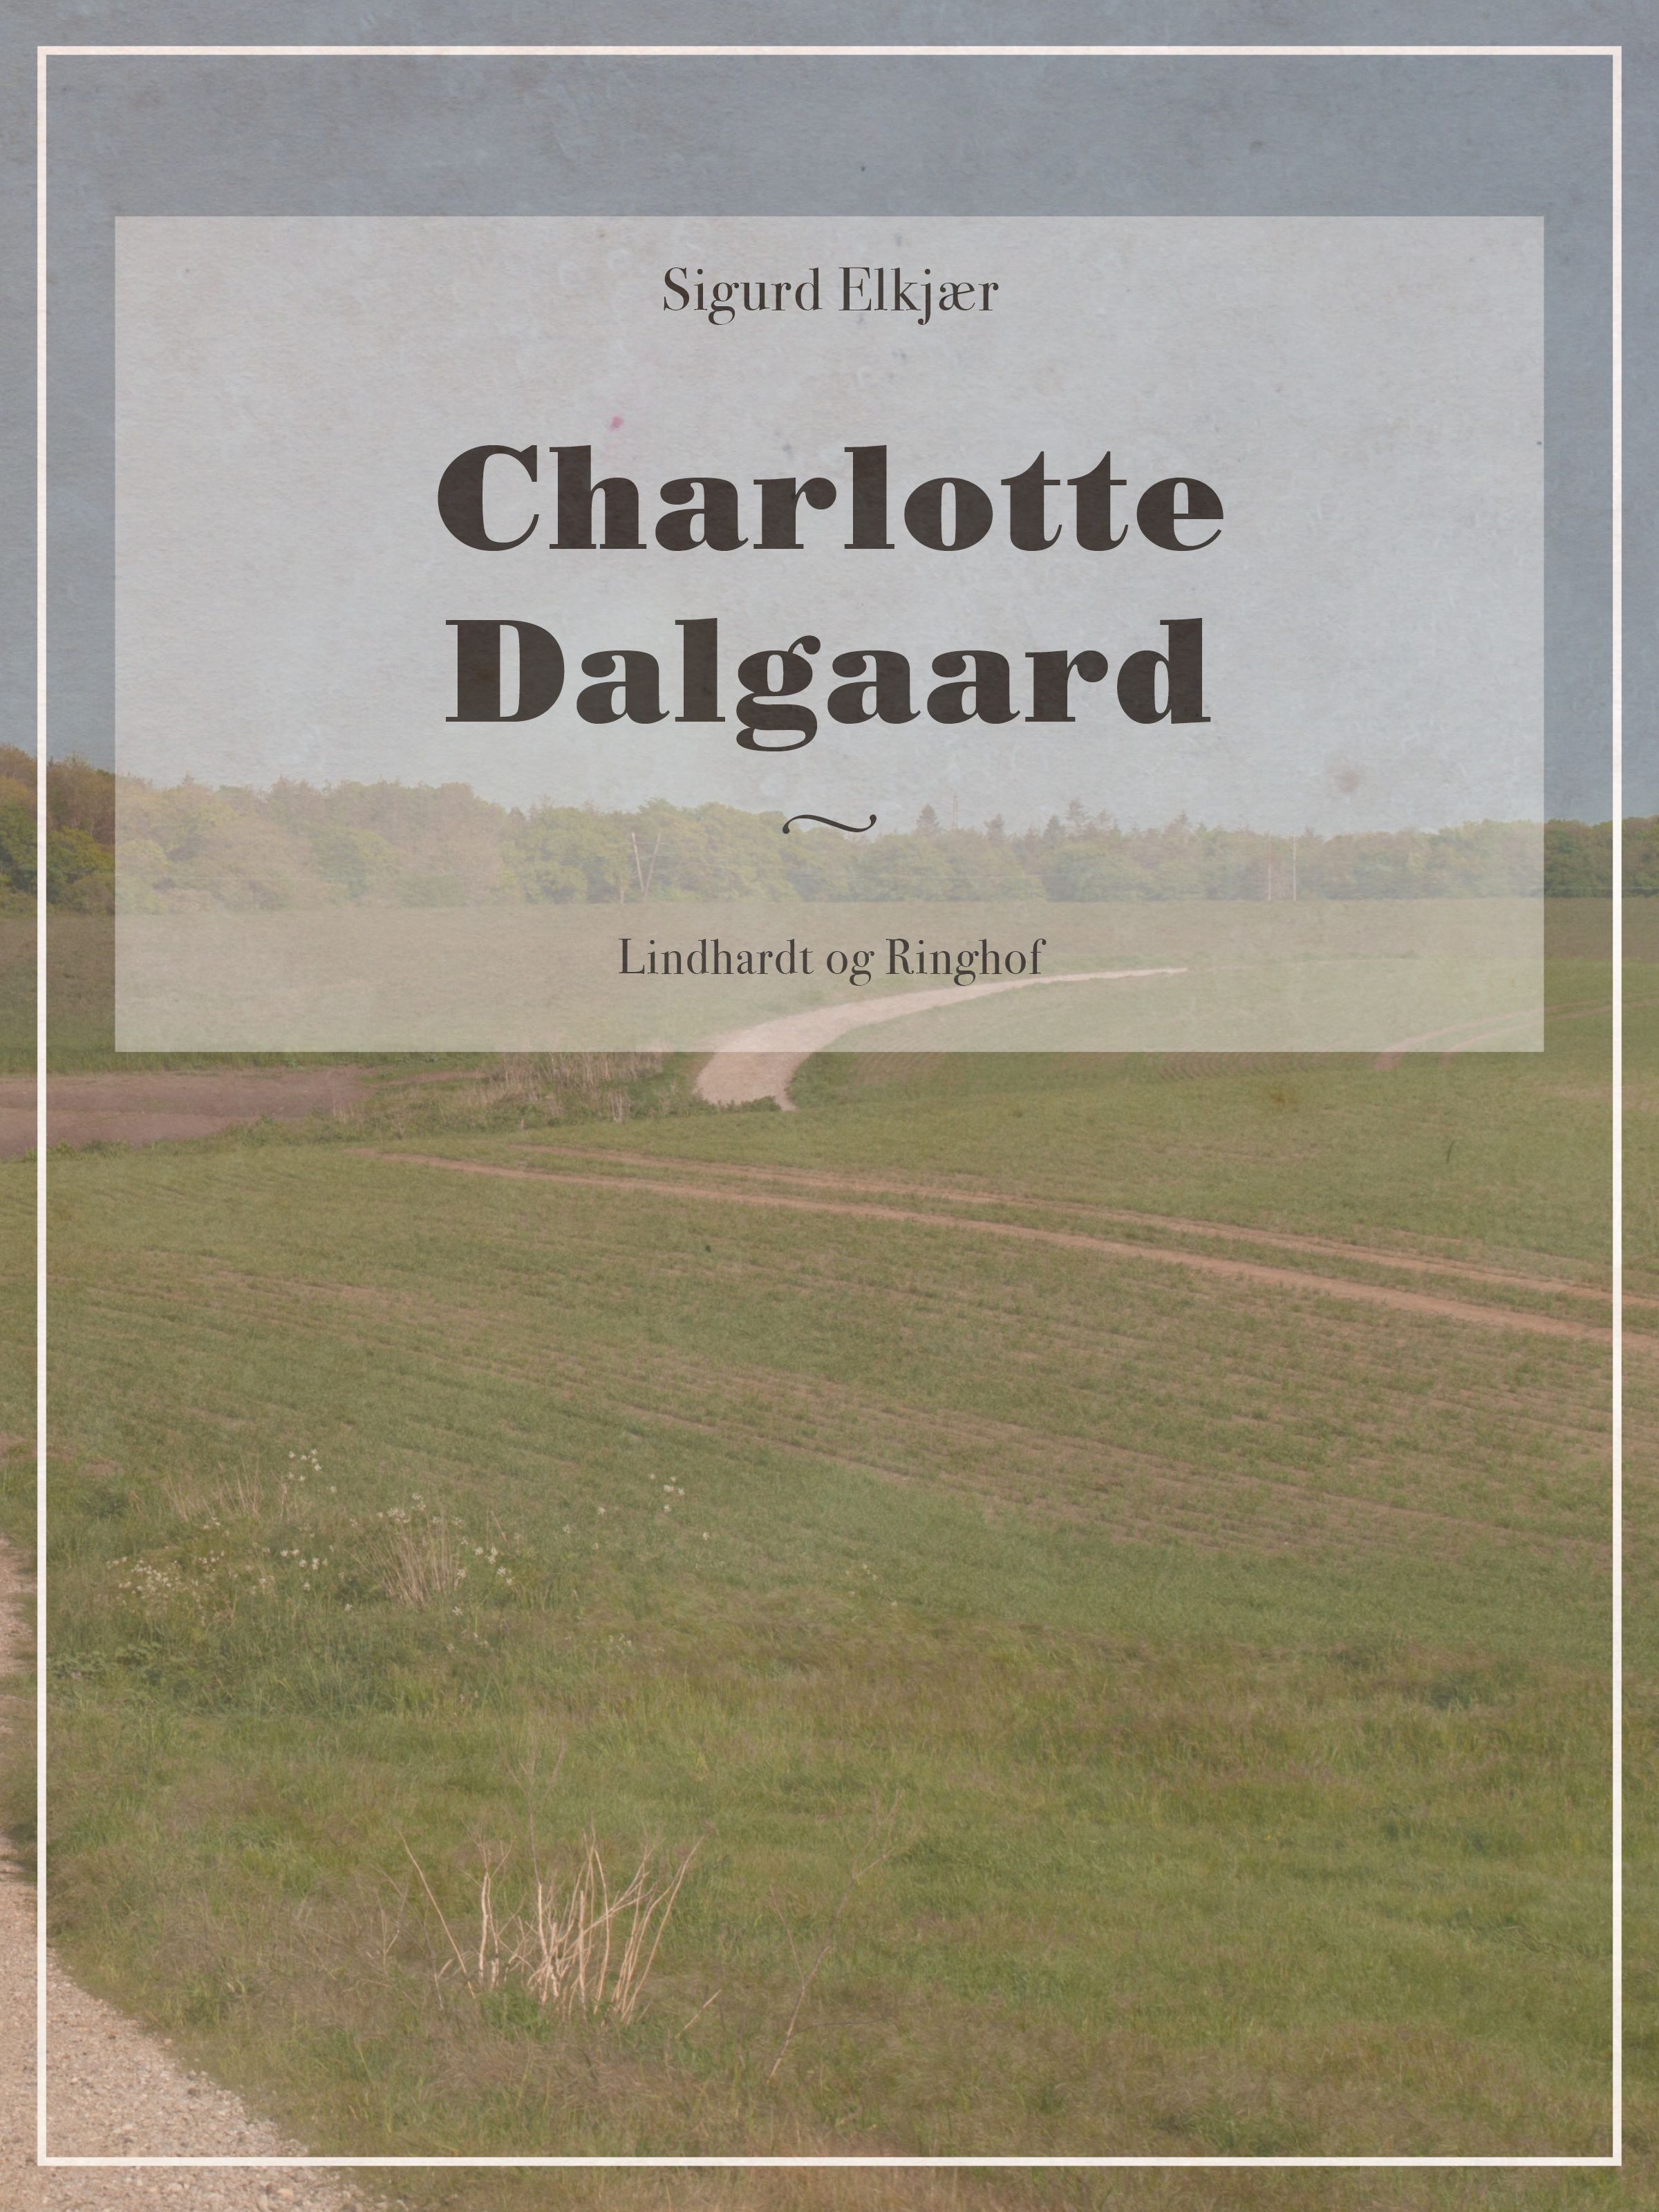 Charlotte Dalgaard, e-bok av Sigurd Elkjær